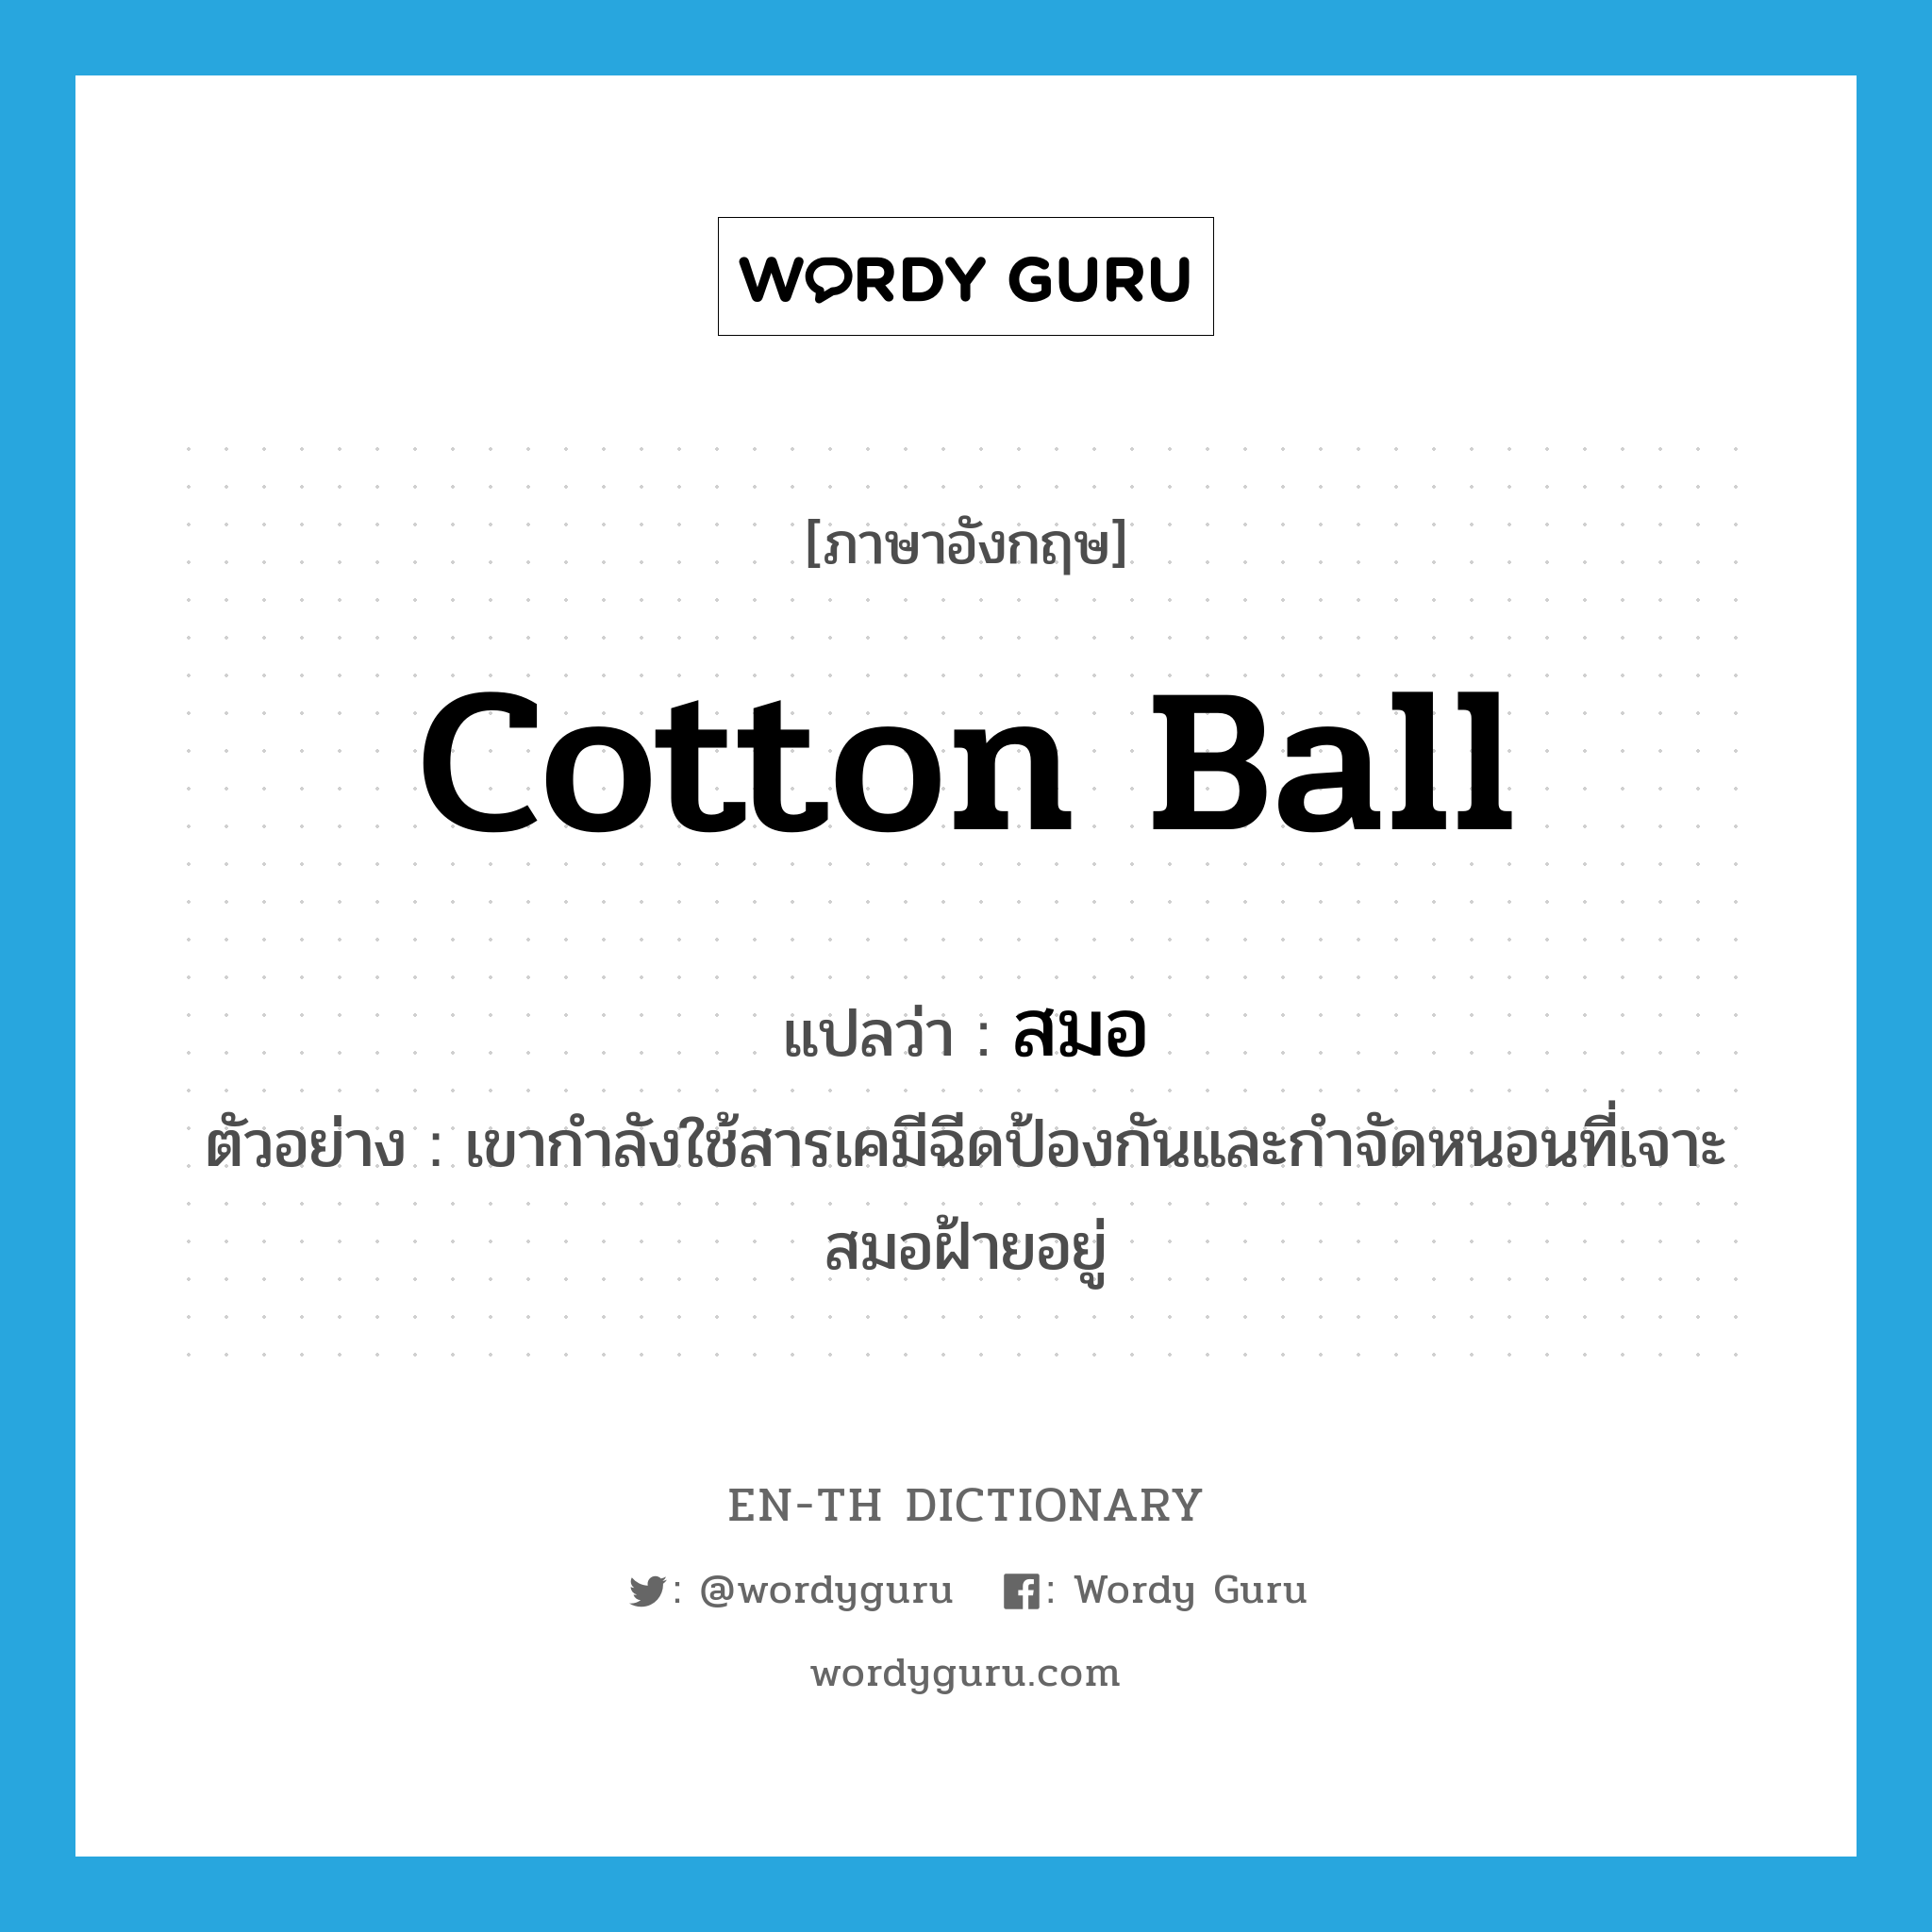 สมอ ภาษาอังกฤษ?, คำศัพท์ภาษาอังกฤษ สมอ แปลว่า cotton ball ประเภท N ตัวอย่าง เขากำลังใช้สารเคมีฉีดป้องกันและกำจัดหนอนที่เจาะสมอฝ้ายอยู่ หมวด N